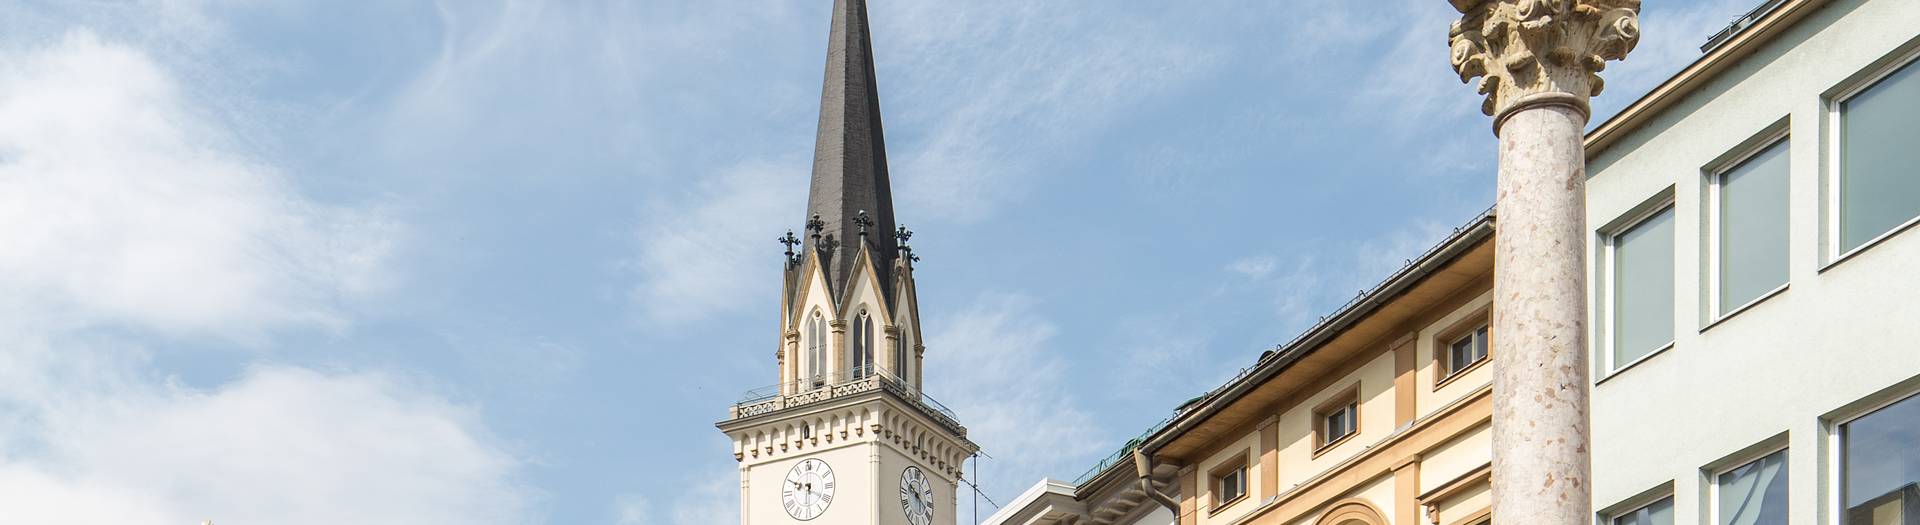 Mit seinen 94 Metern ist der Turm der Jakobskirche, der bereits im Mittelalter berühmt war und mehrfach umgestaltet wurde, der höchste Kärntens.